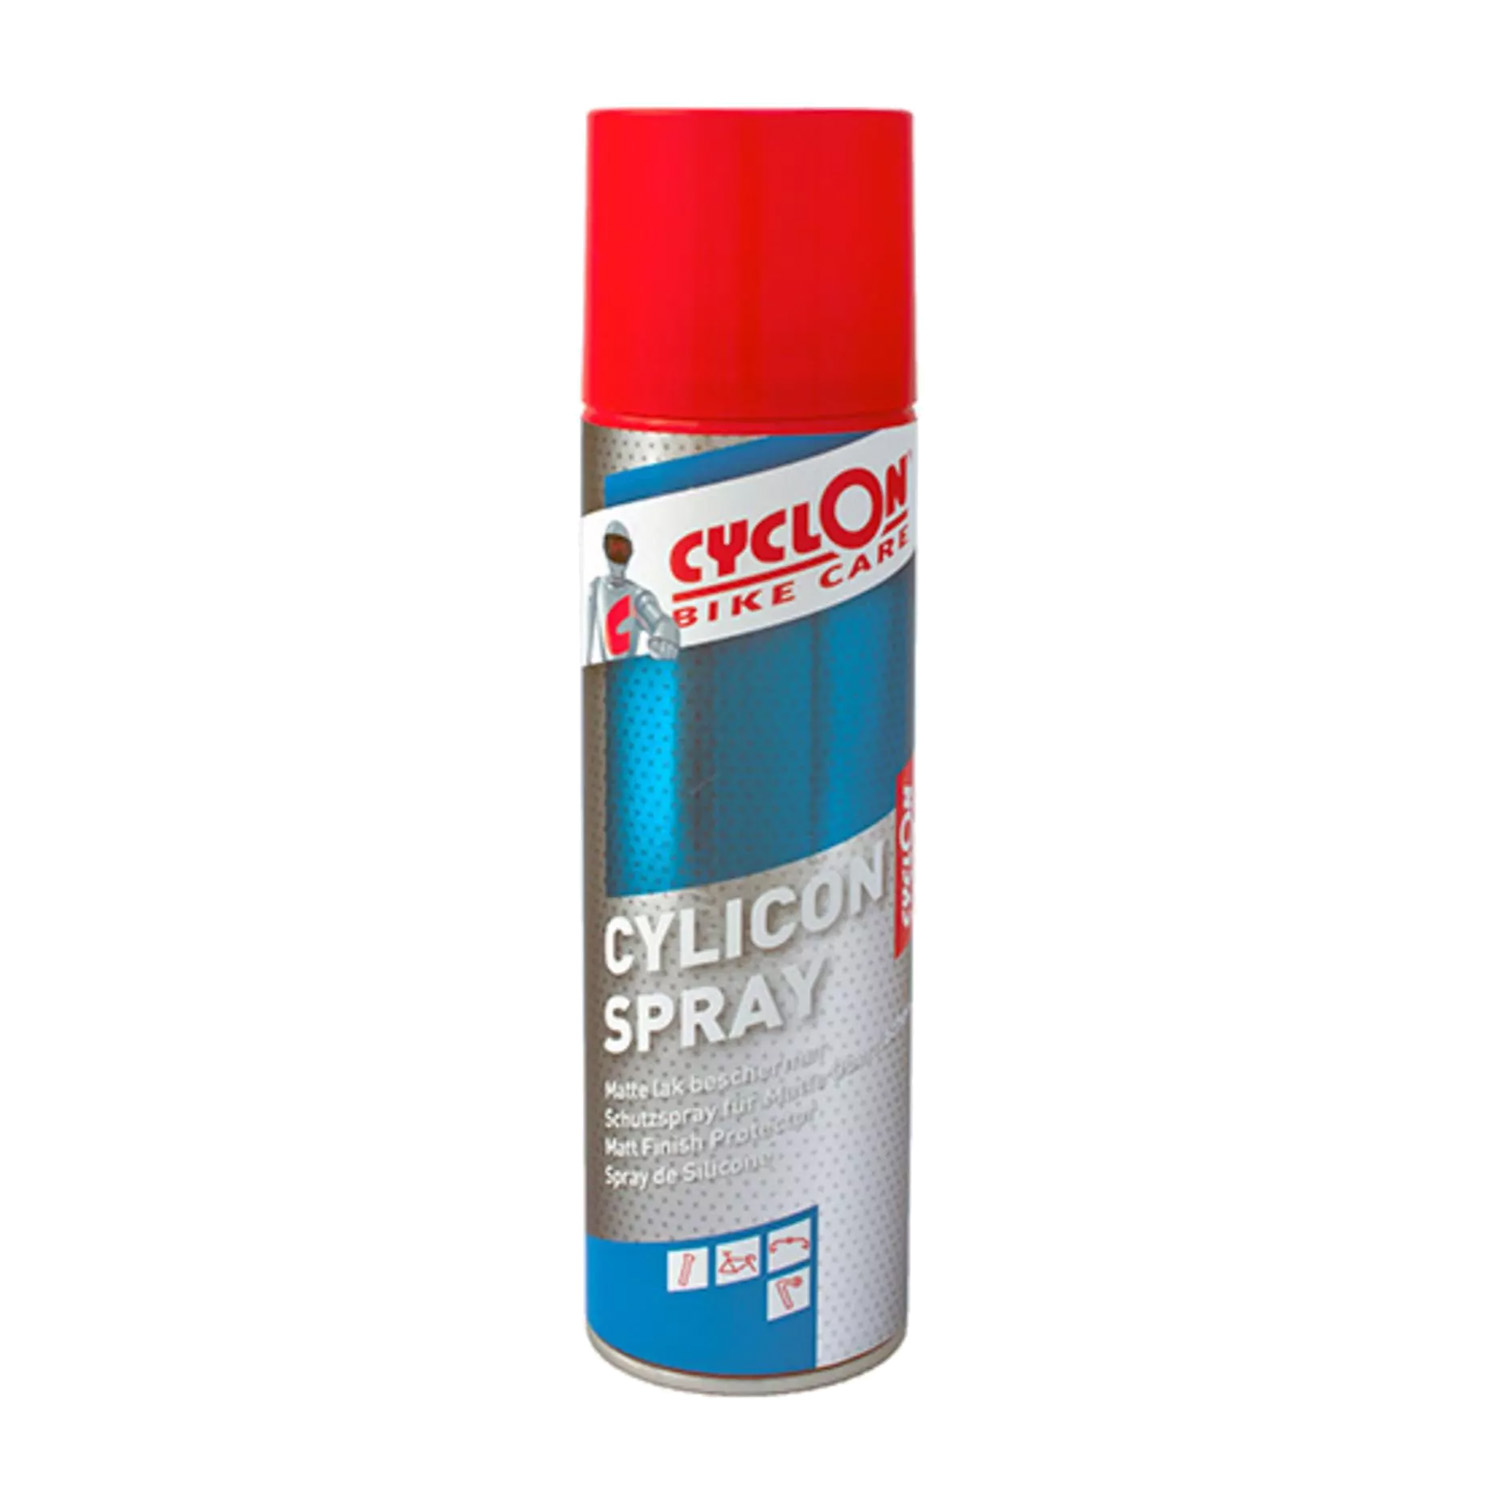 Cyclon siliconenspray